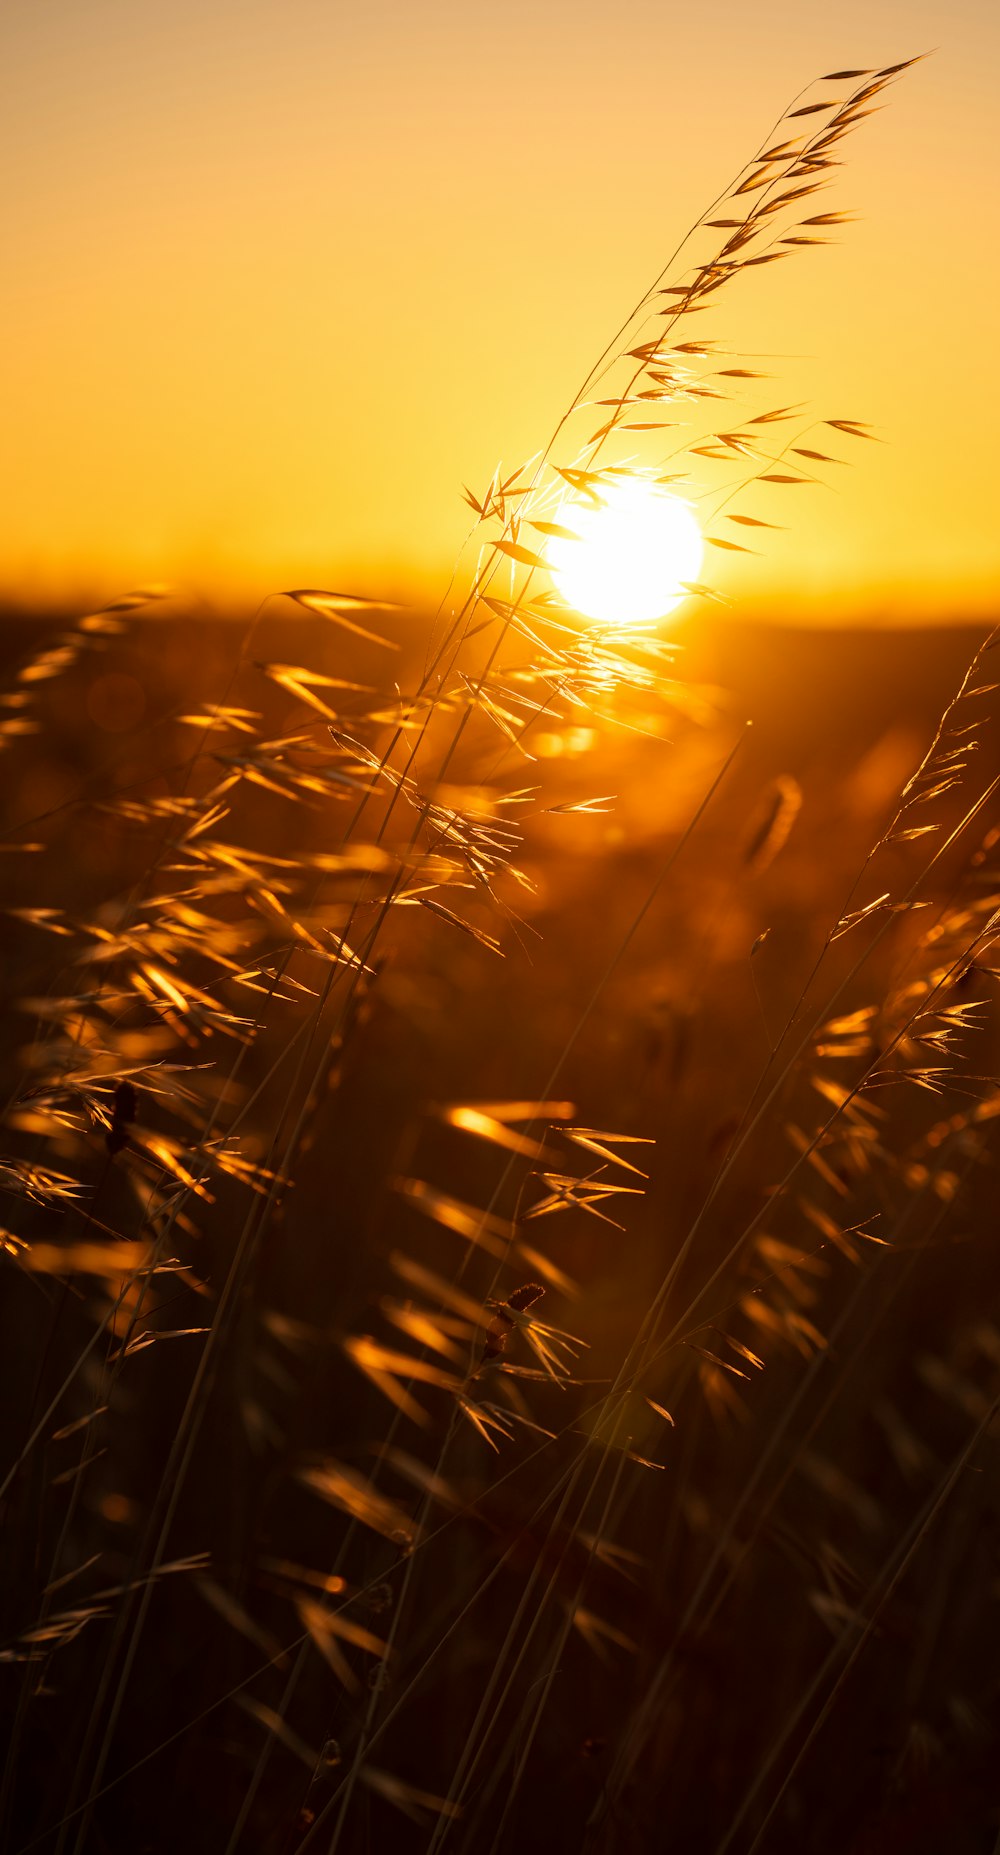 夕暮れ時の茶色い小麦畑